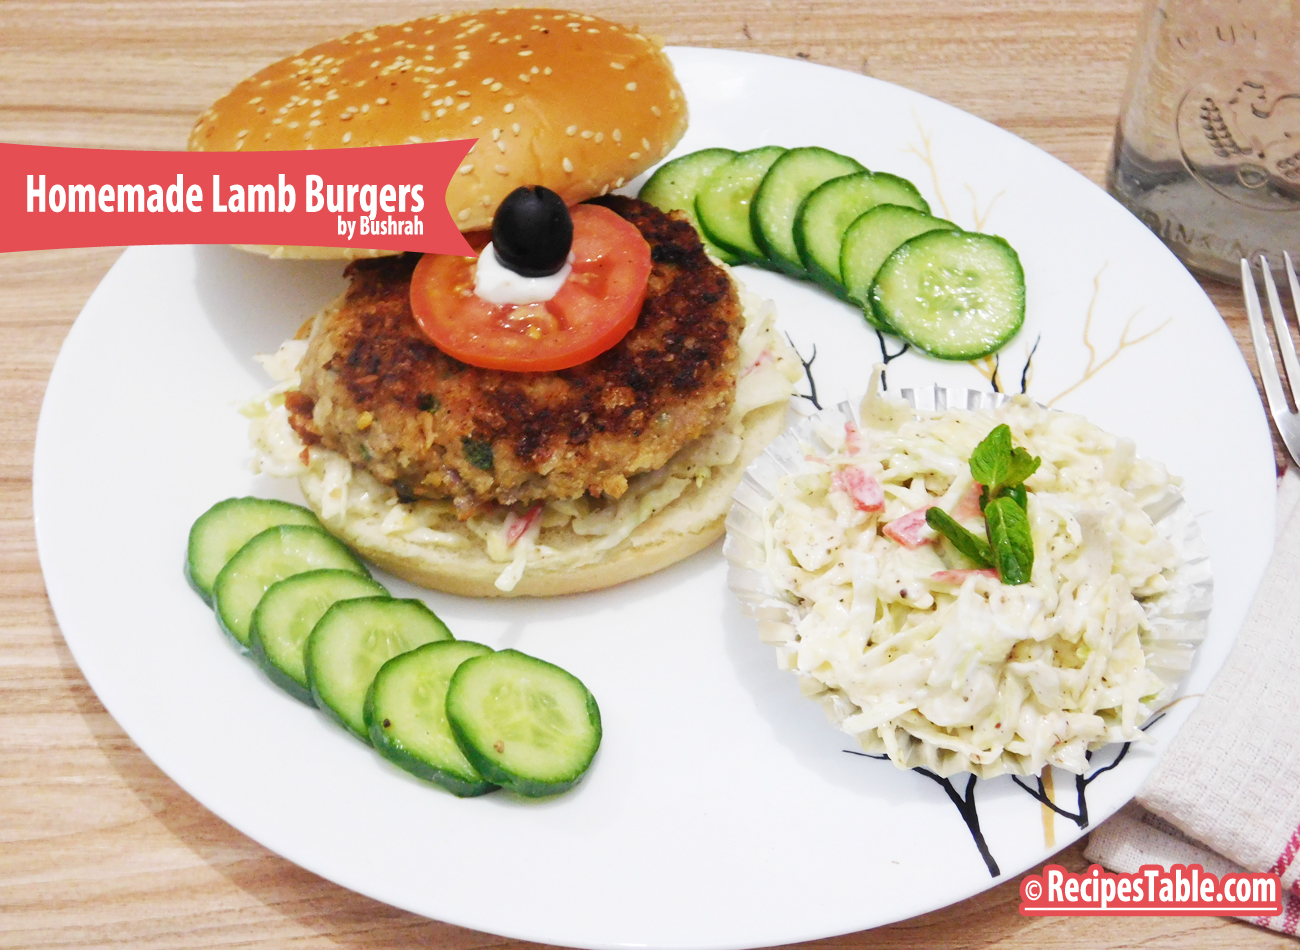 Homemade Lamb Burgers recipe